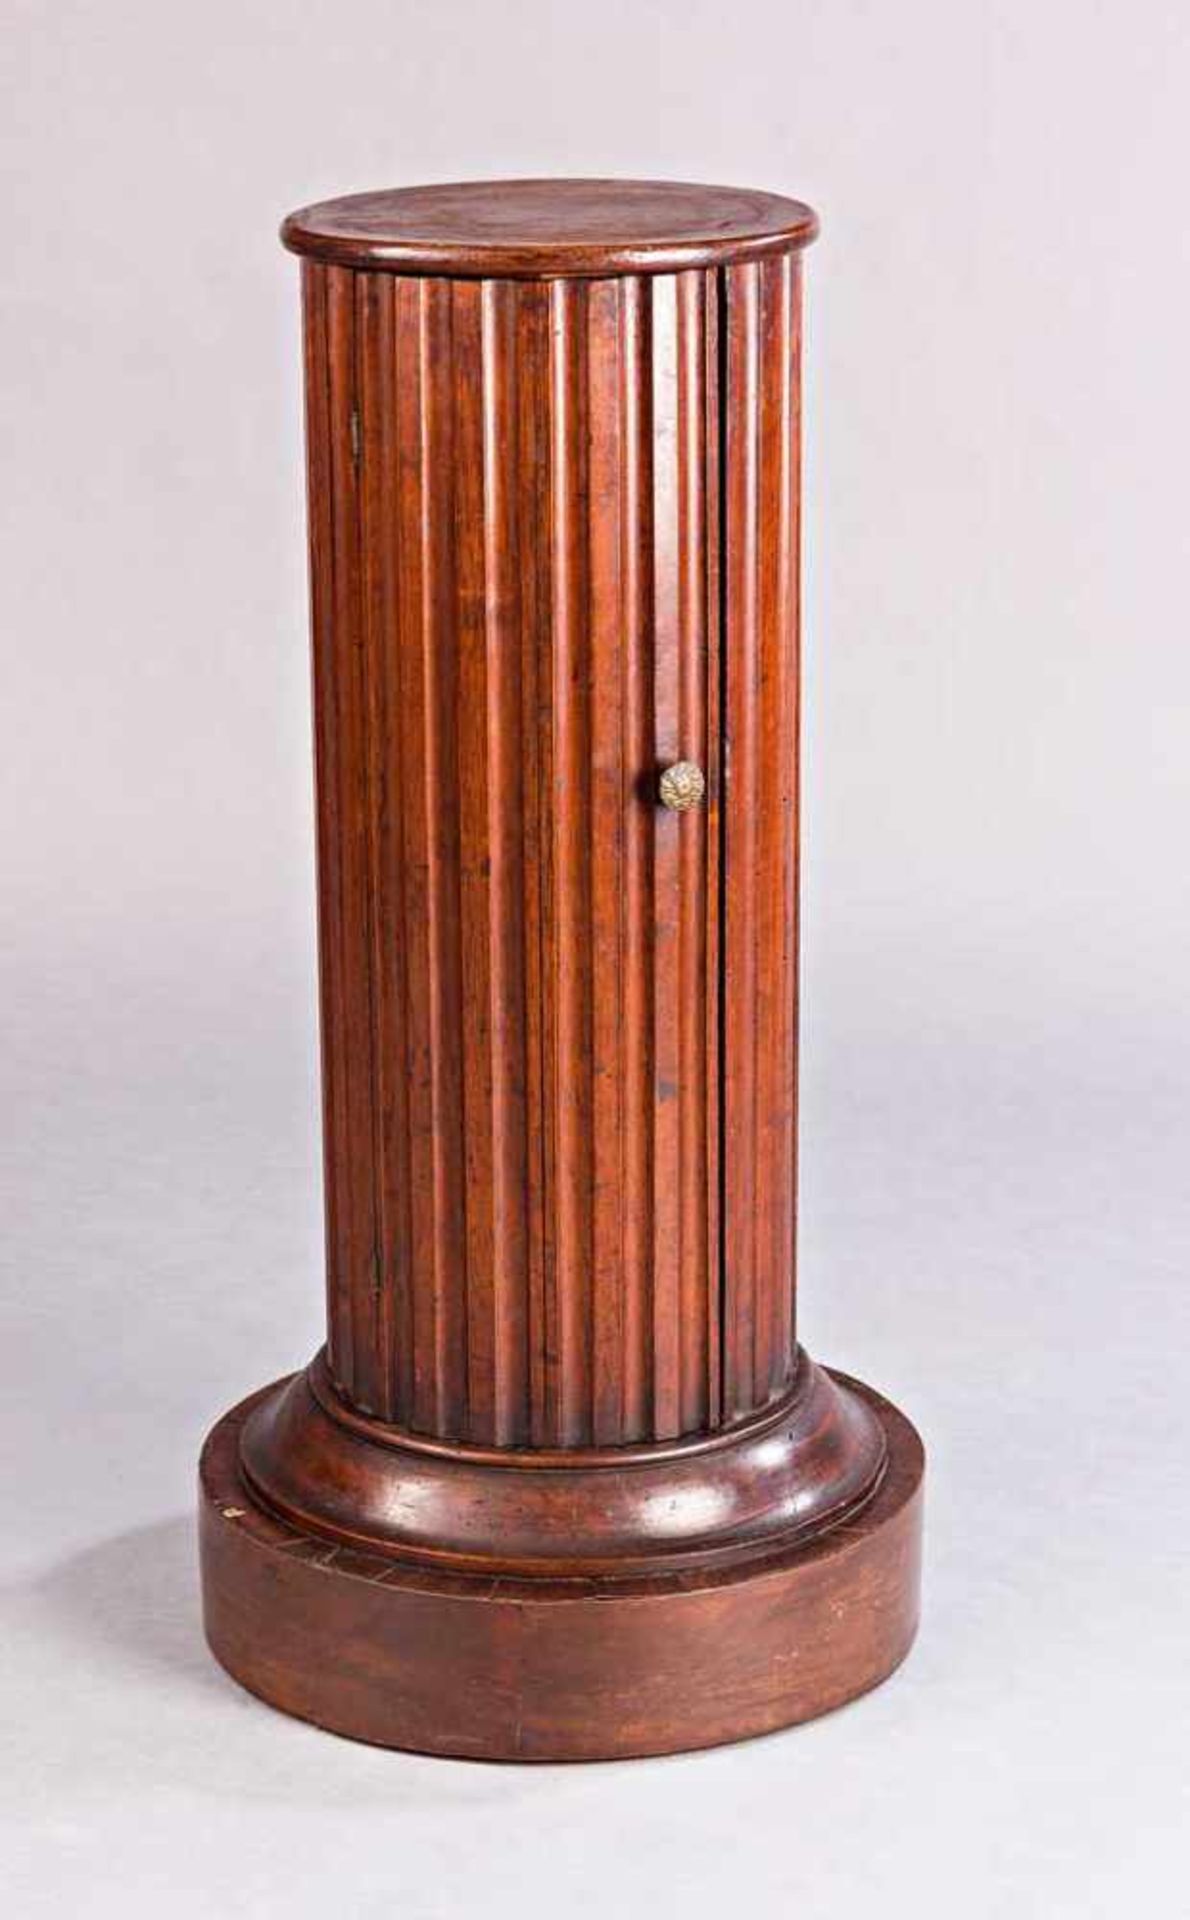 Tonneau in Säulenform. Eintürig. Nussbaum. 19./20. Jh. H 92 cm, Ø 50 cm